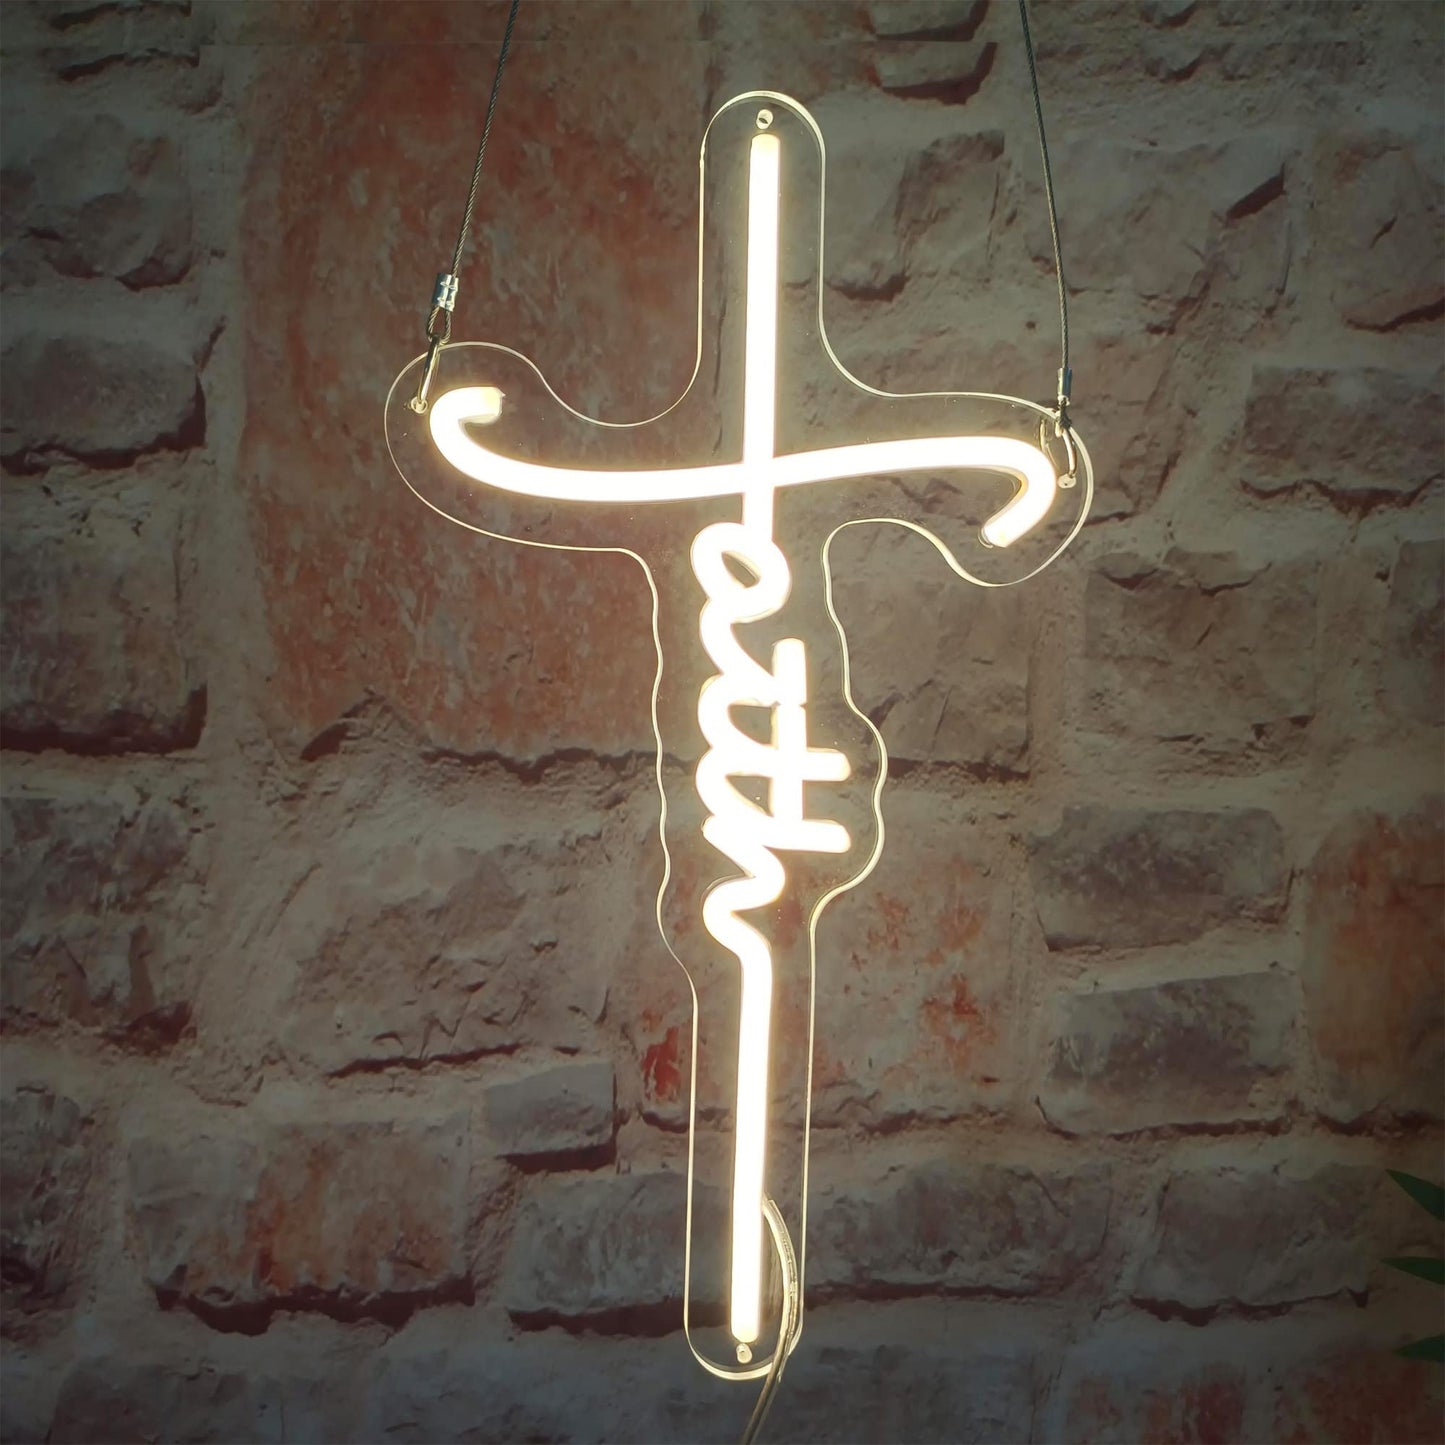 Cross Neon Sign for Wall Decor Cross Faith Christian Neon Sign